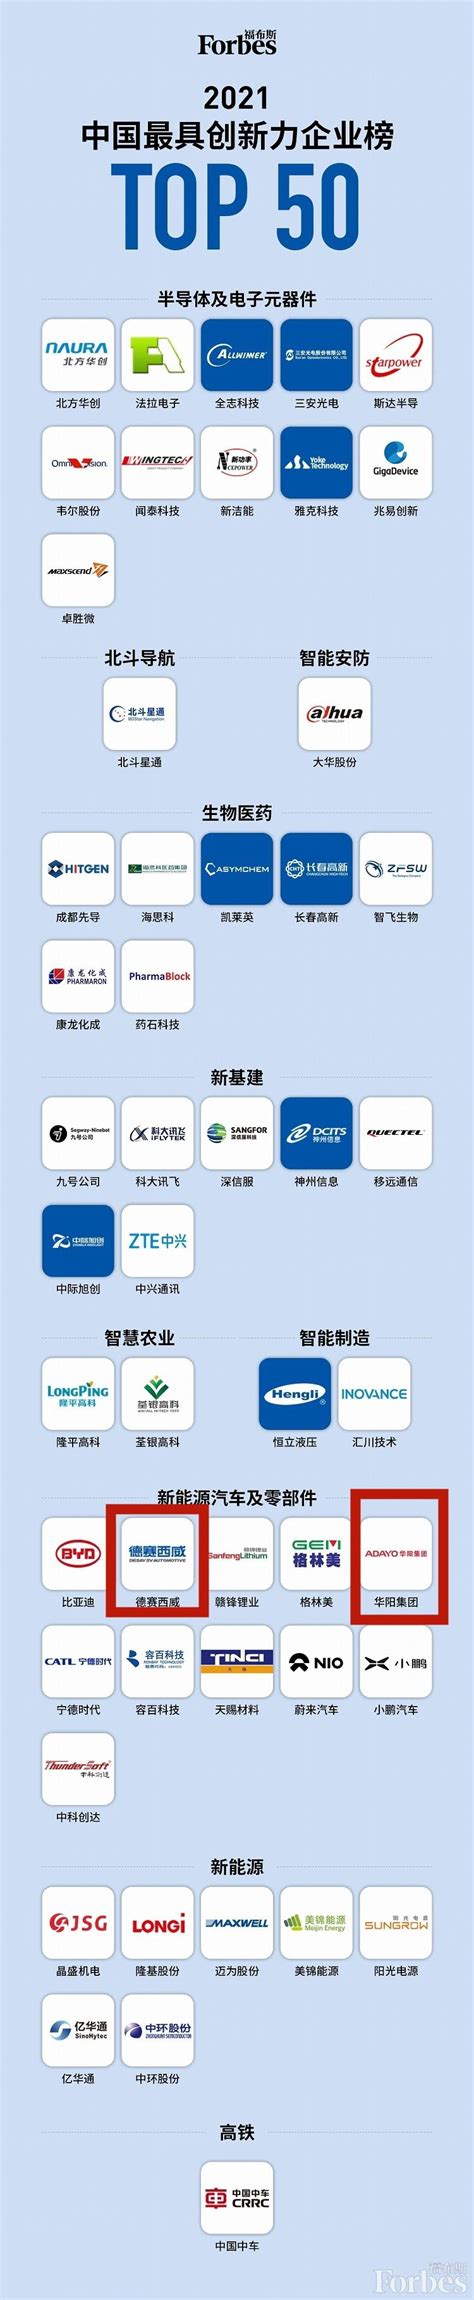 惠州两家企业跻身中国最具创新力企业榜